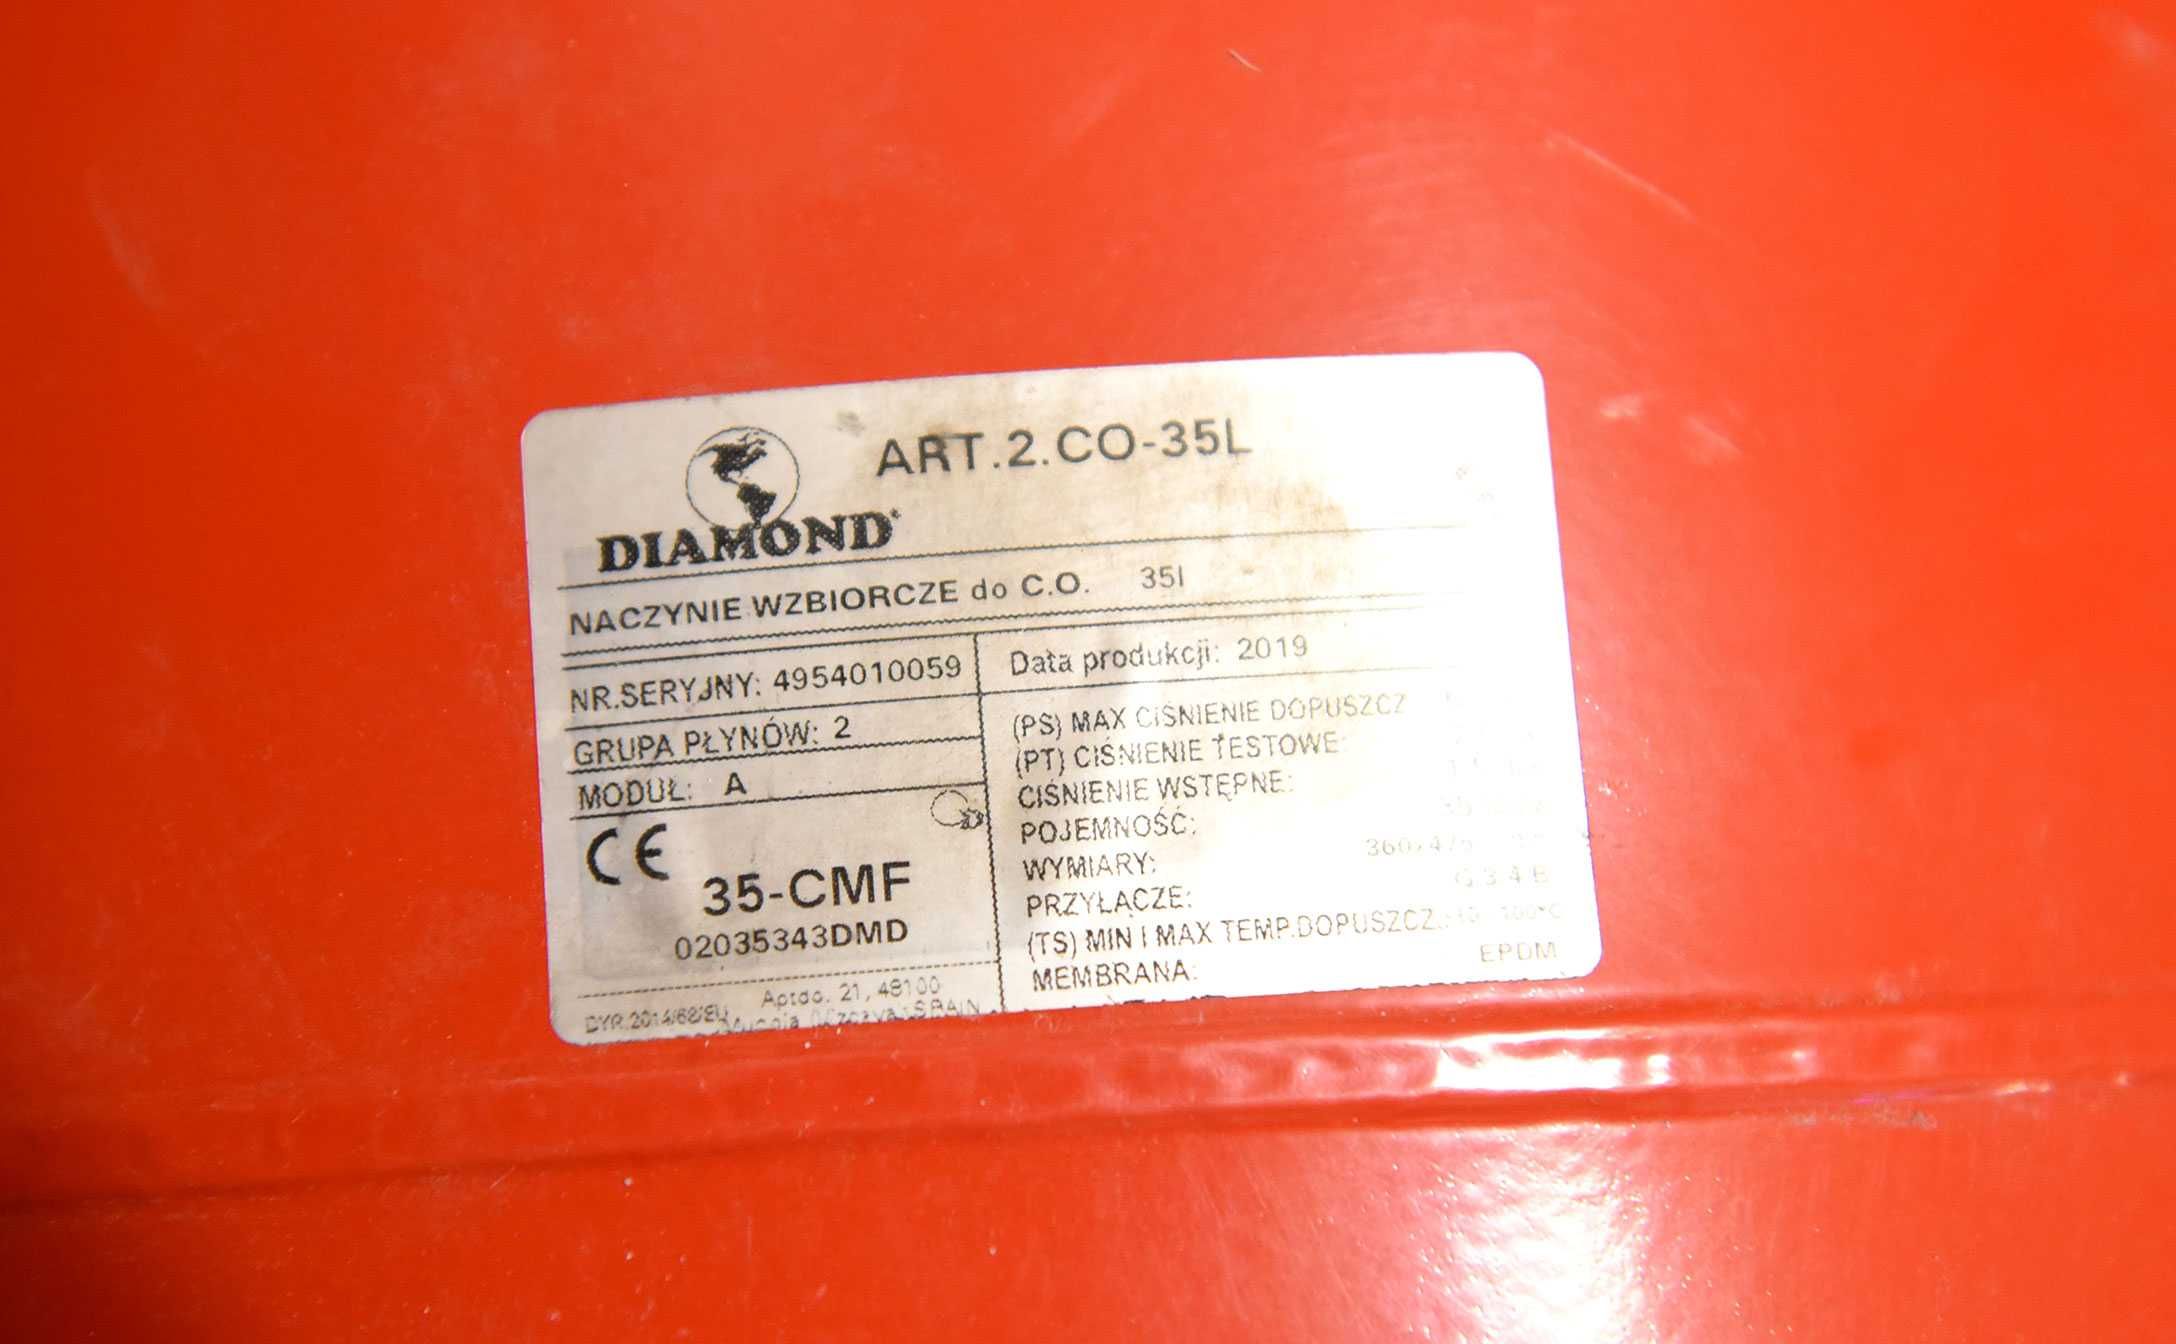 Naczynie wzbiorcze wyrównawcze do C.O Diamond 35 -CMF - 35 litrów.